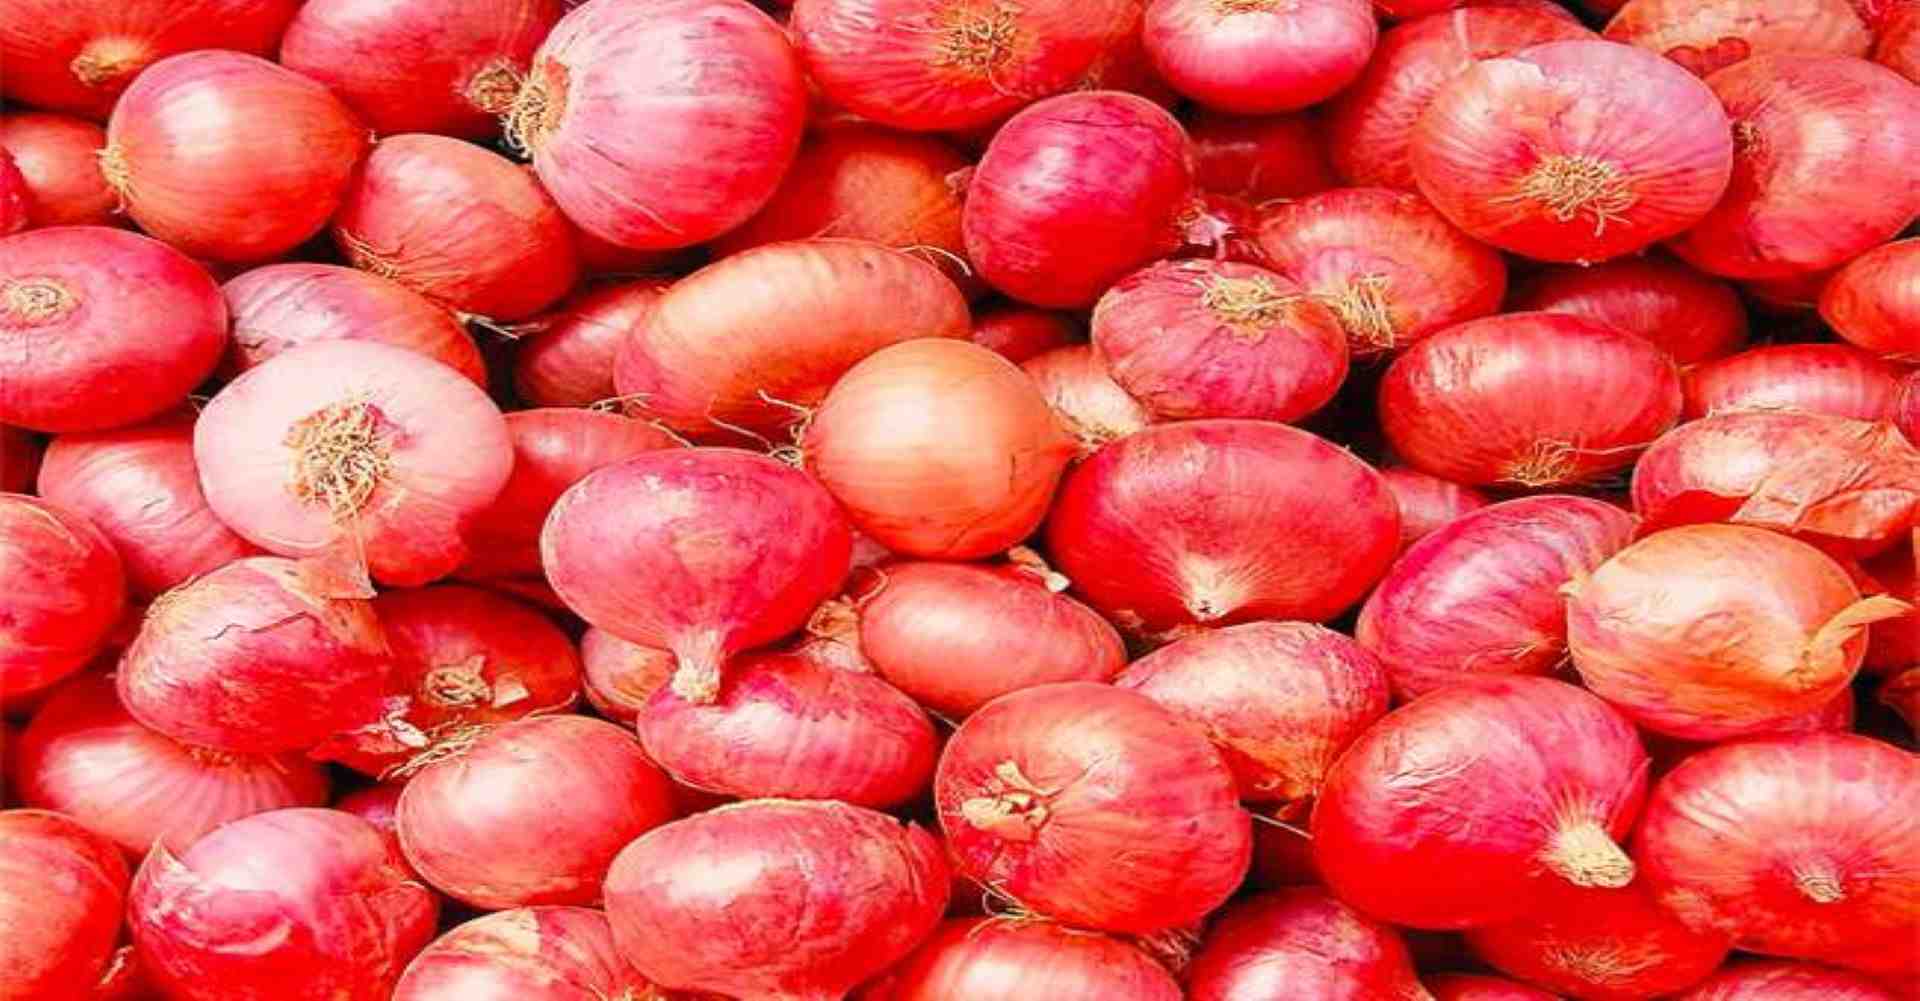 Otur onion market